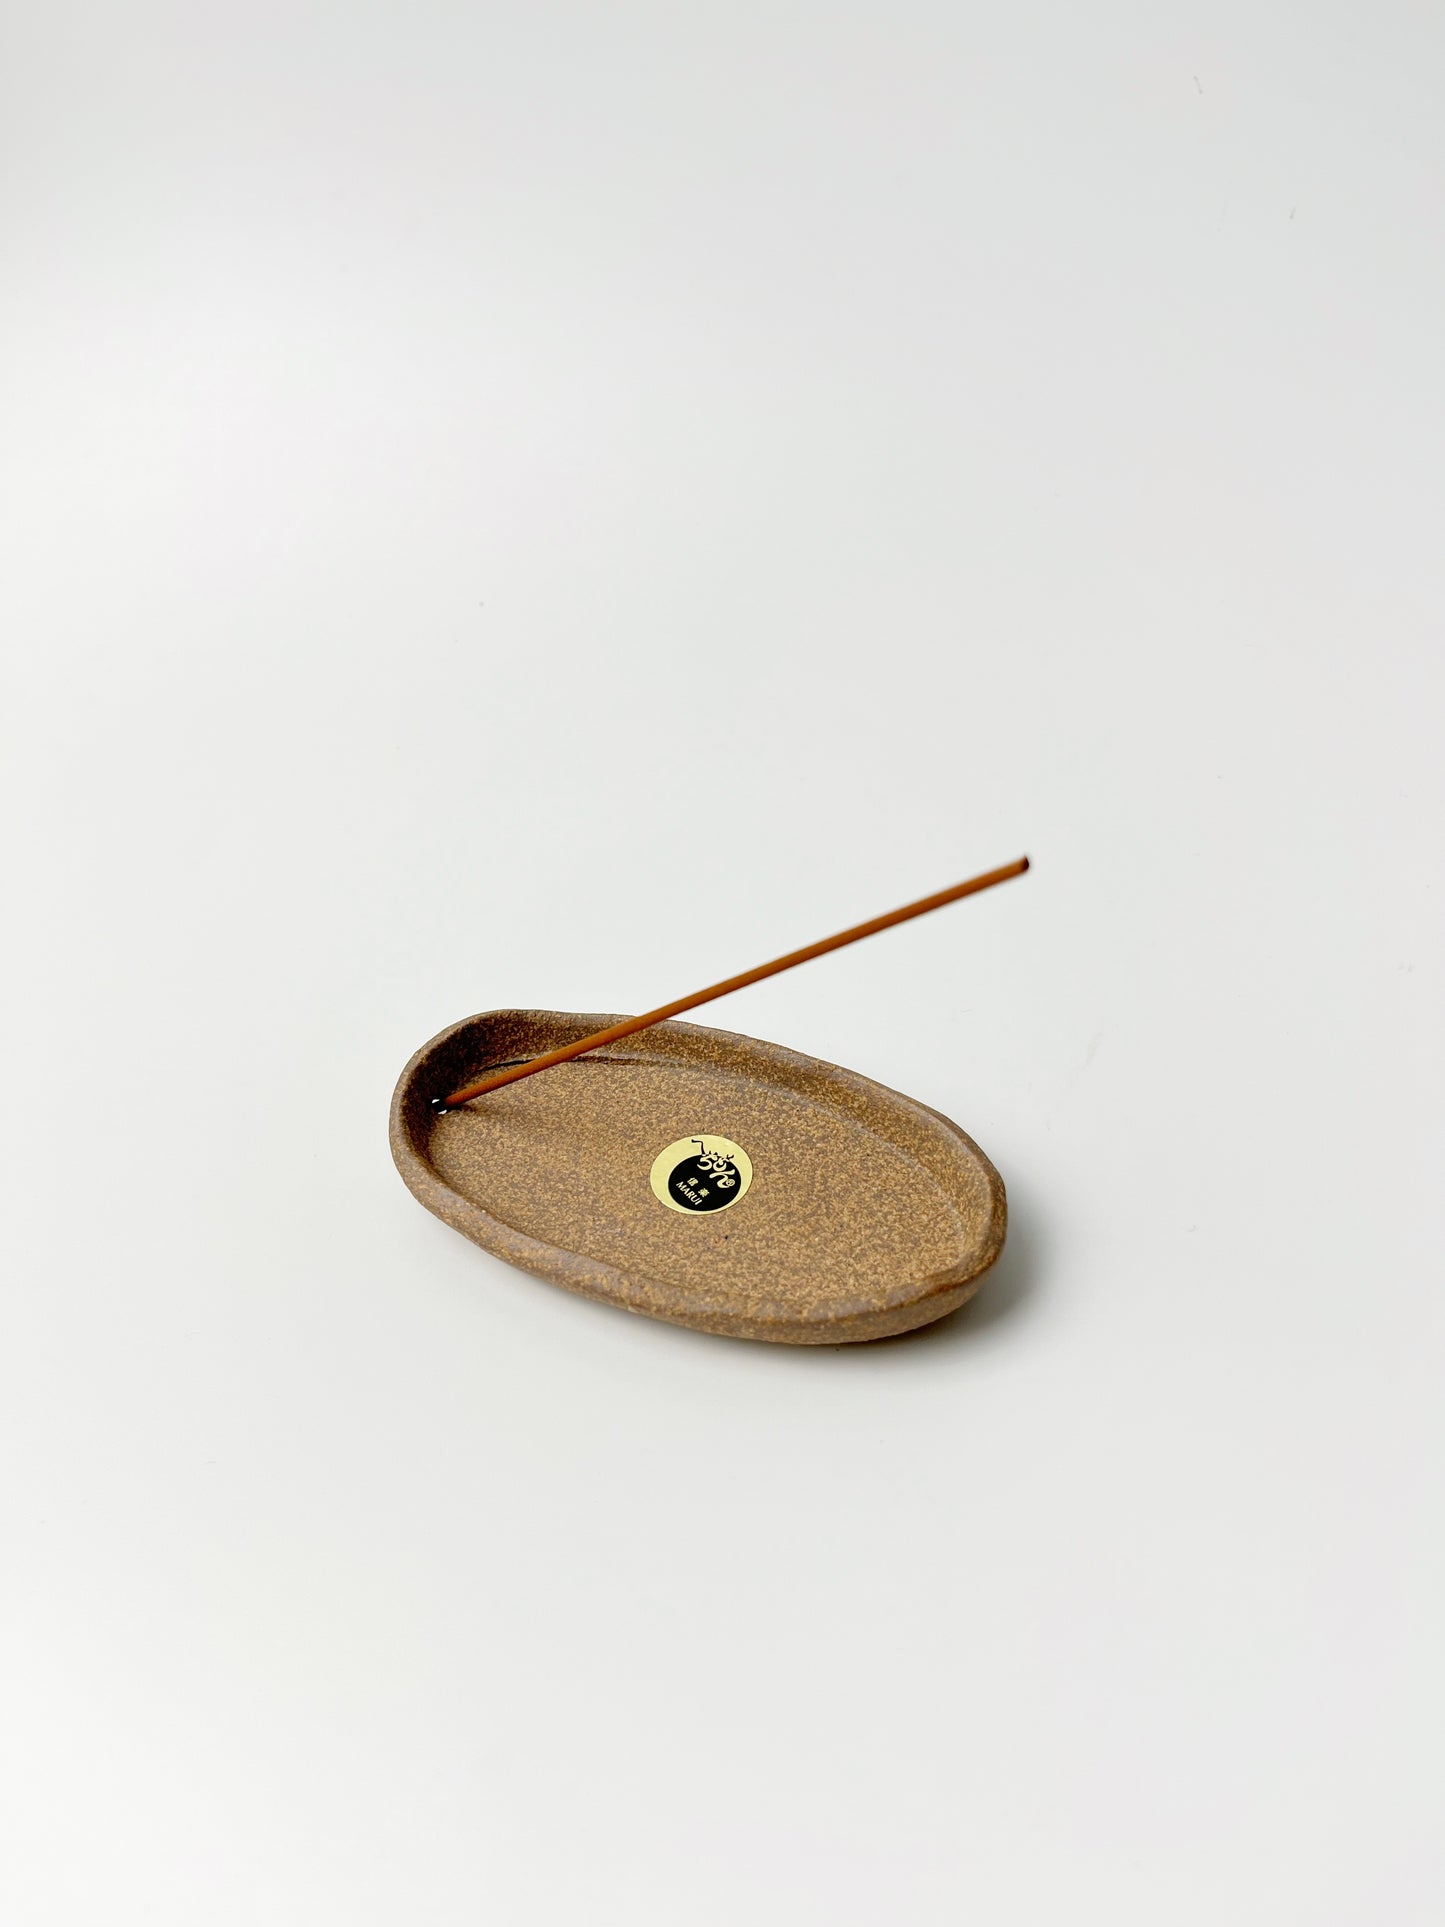 日本信樂燒 貓頭鷹線香座｜ Japanese Shigaraki Ware Owls Incense Holder